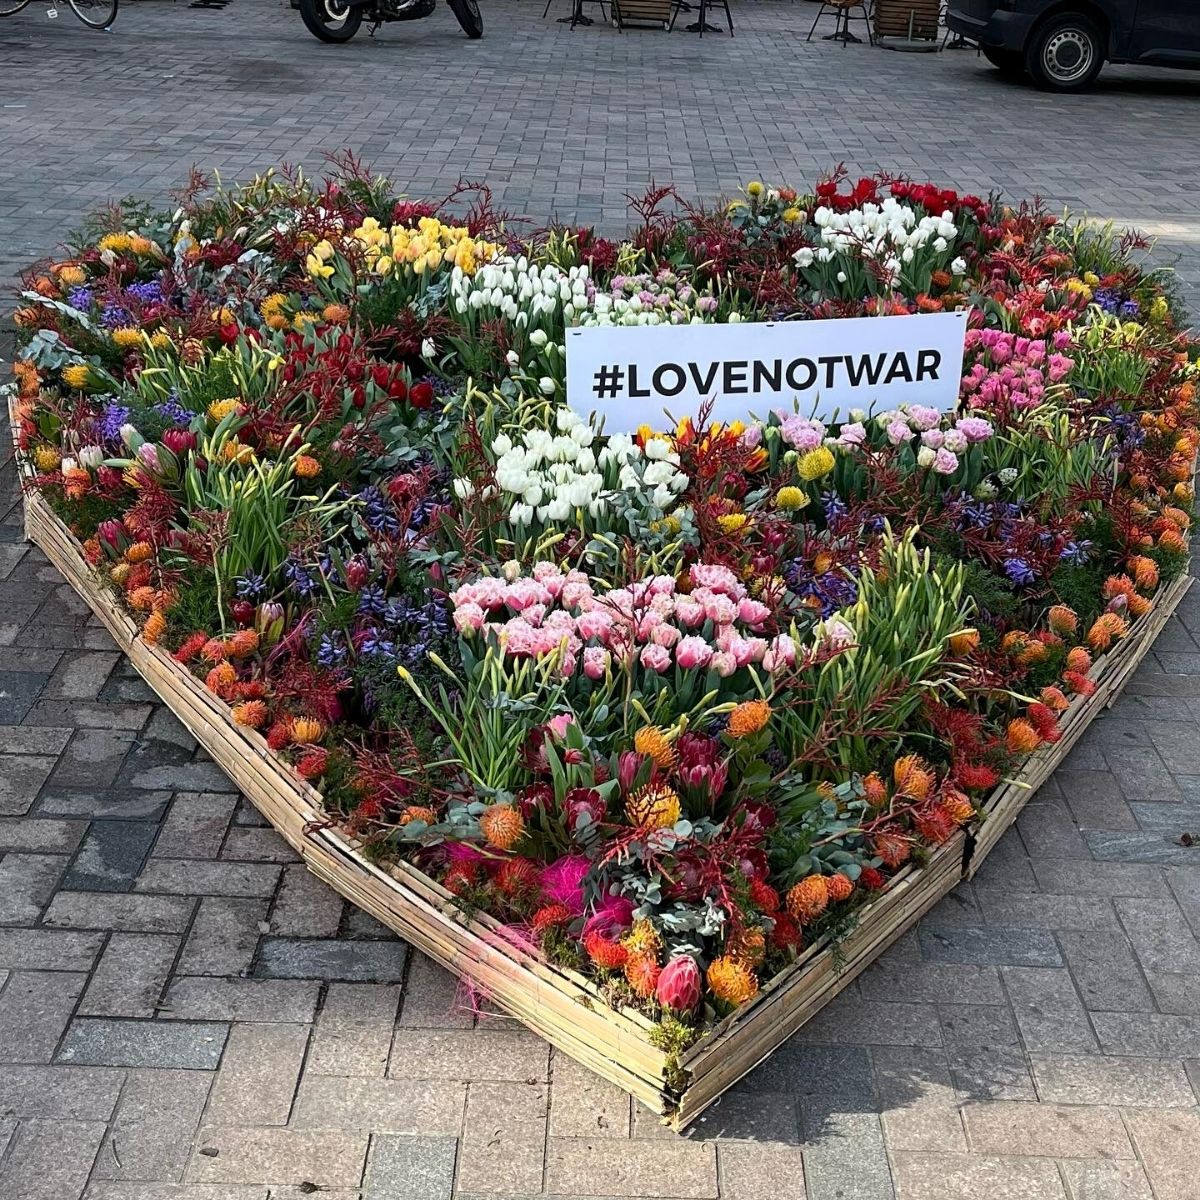 Heart for #lovenotwar in The Hague - on Thursd